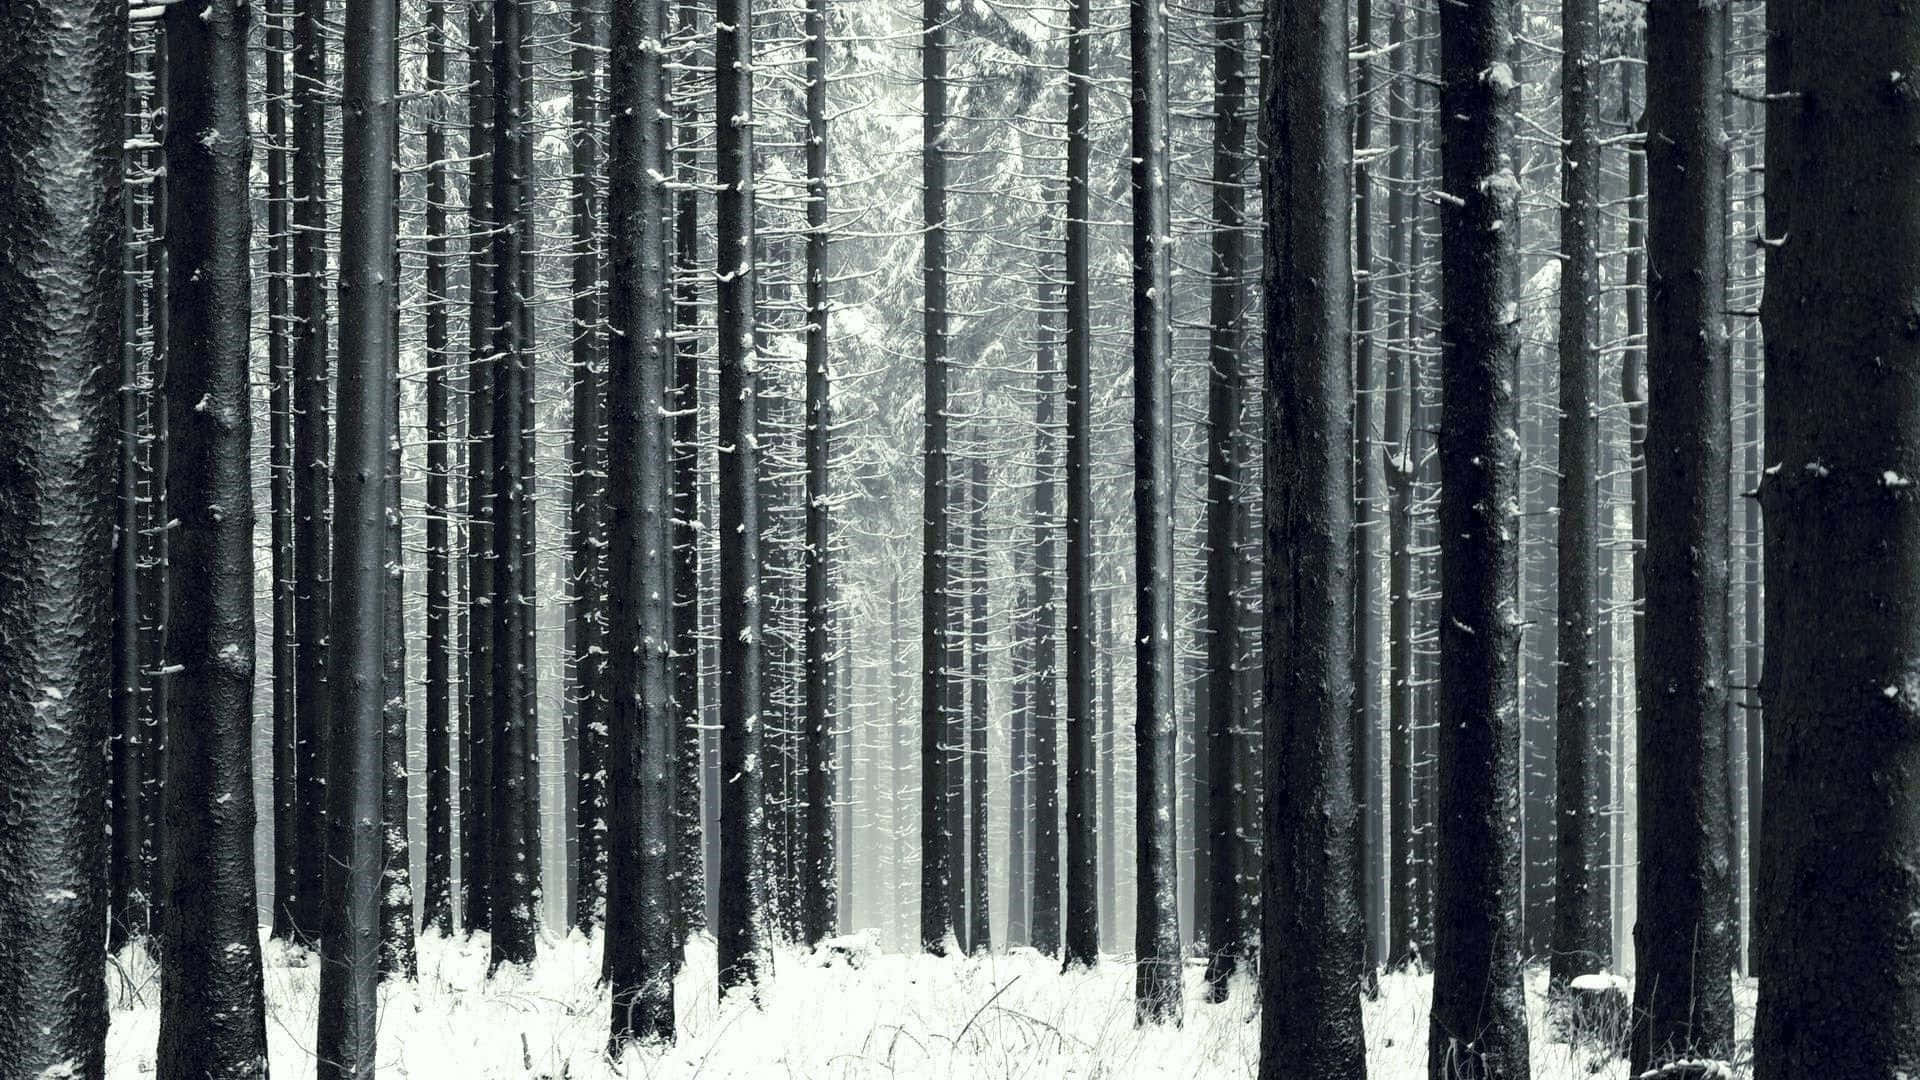 Majestic Winter Trees in Snowy Landscape Wallpaper